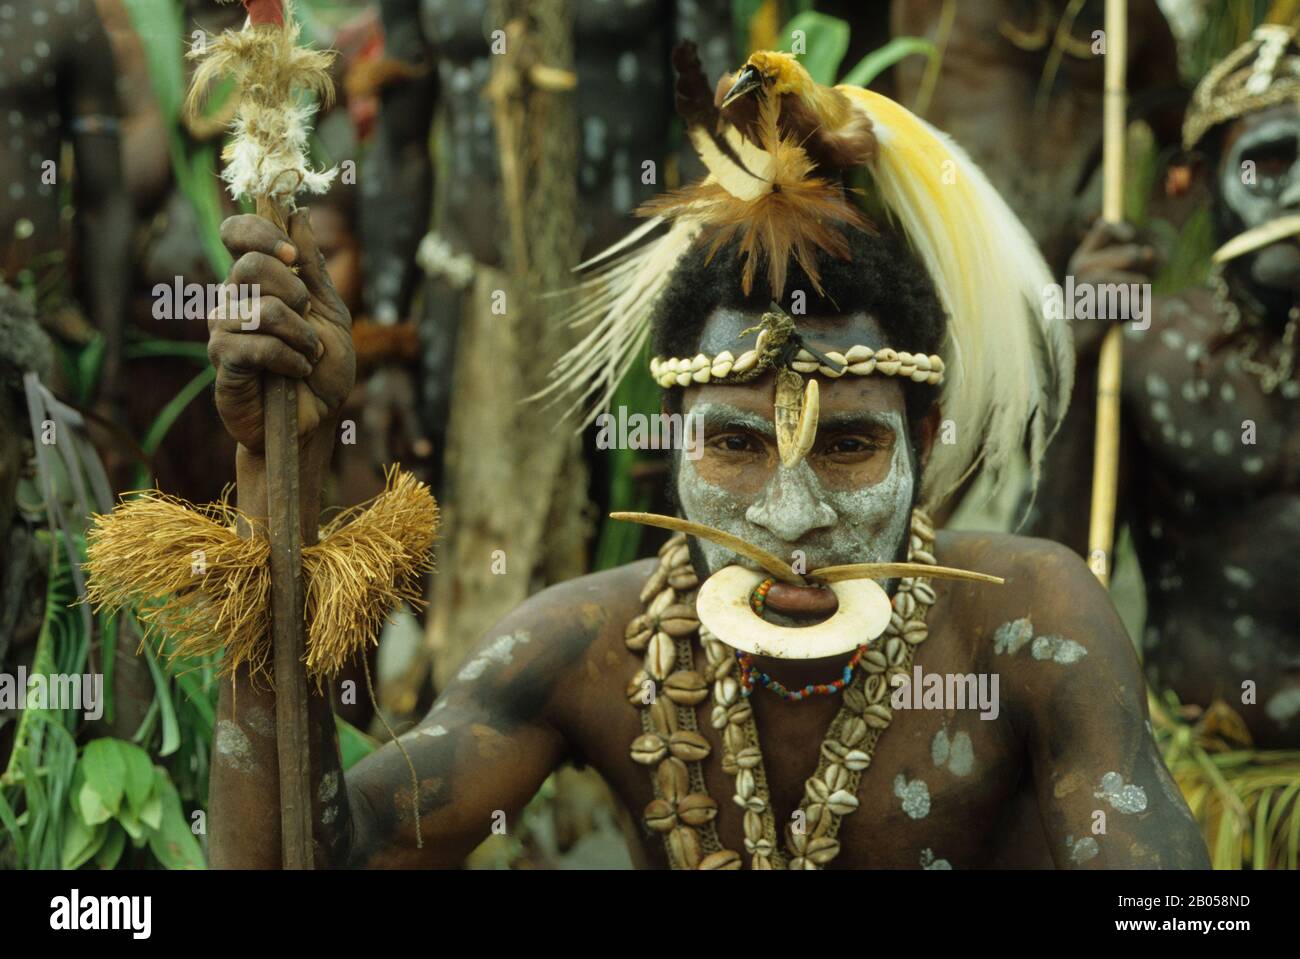 PAPUA-NEUGUINEA, SEPIK-FLUSS, MAN IM TRADITIONELLEN KLEID MIT PARADIESFEDERN Stockfoto